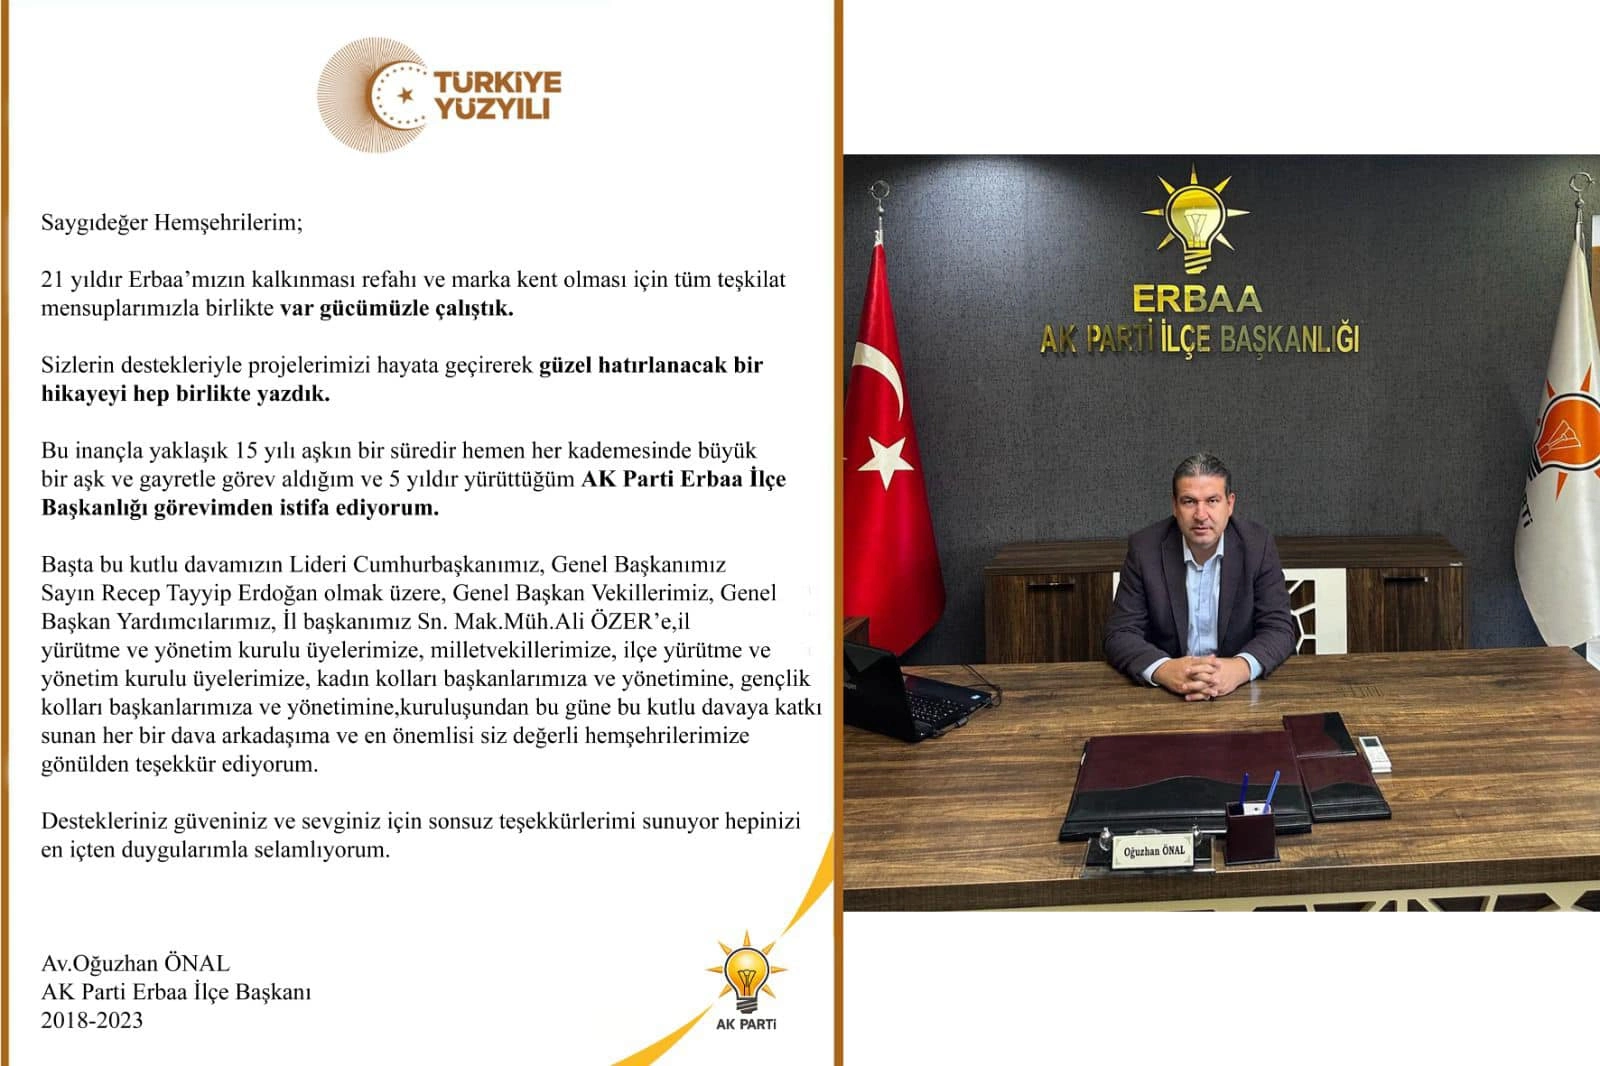 AK Parti Erbaa İlçe Başkanı Oğuzhan Önal, görevinden istifa ettiğini açıkladı.